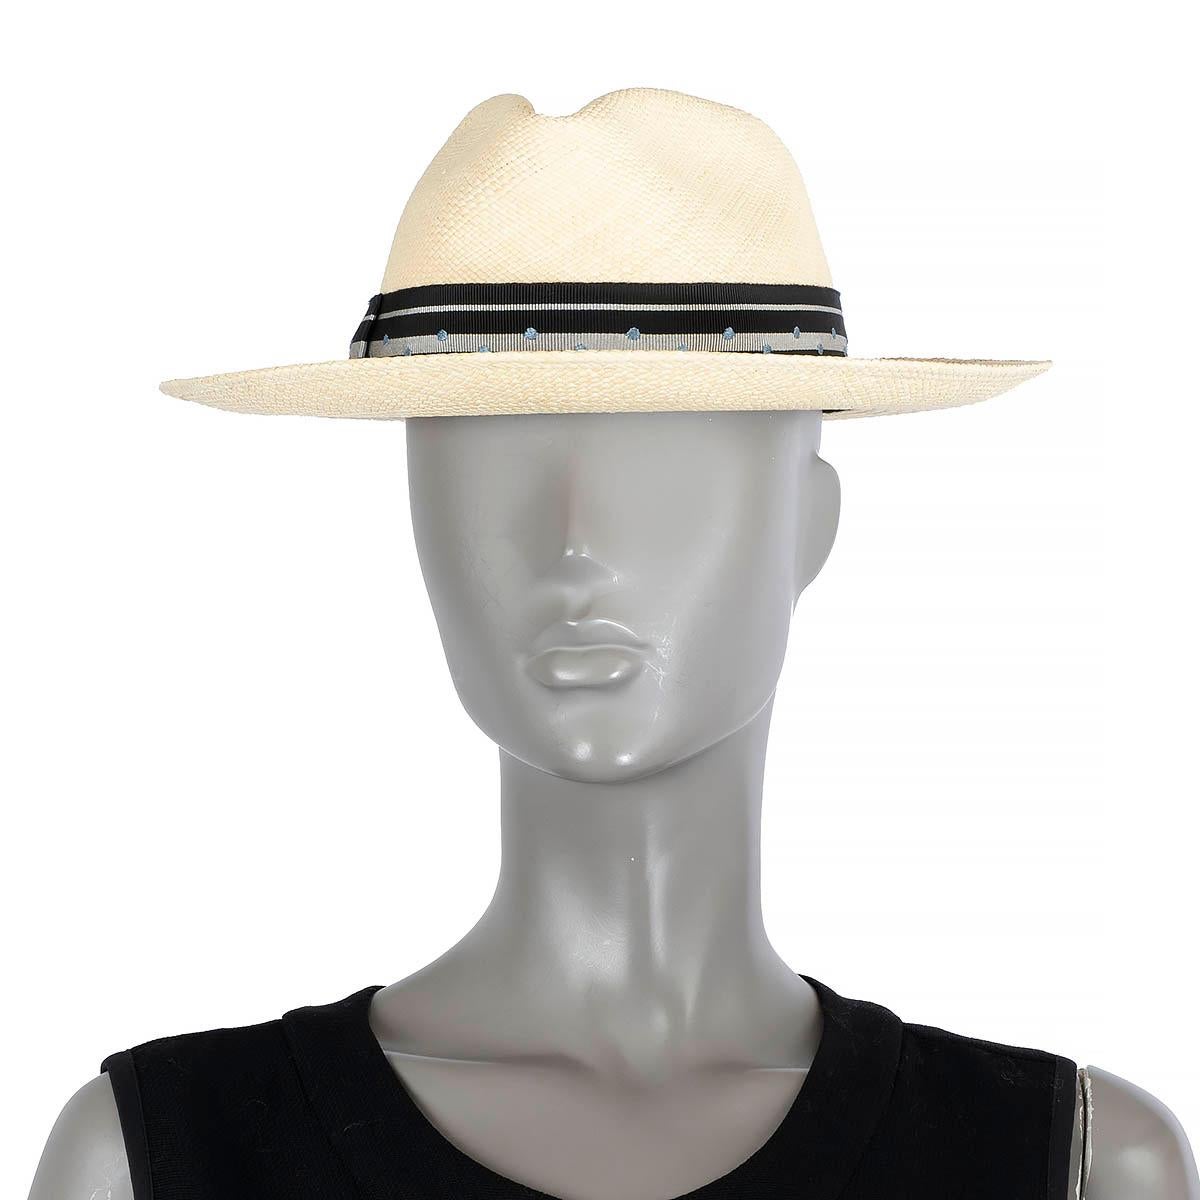 100% authentischer Hermès Fedora-Hut aus beigem Stroh, verziert mit einem schwarz-silbern gestreiften Ripsband mit hellblauen Polka-Dots. Hermès Fedora Hut aus beigem Stroh mit schwarz-silbern gestreiftem Ripsband und hellblauen